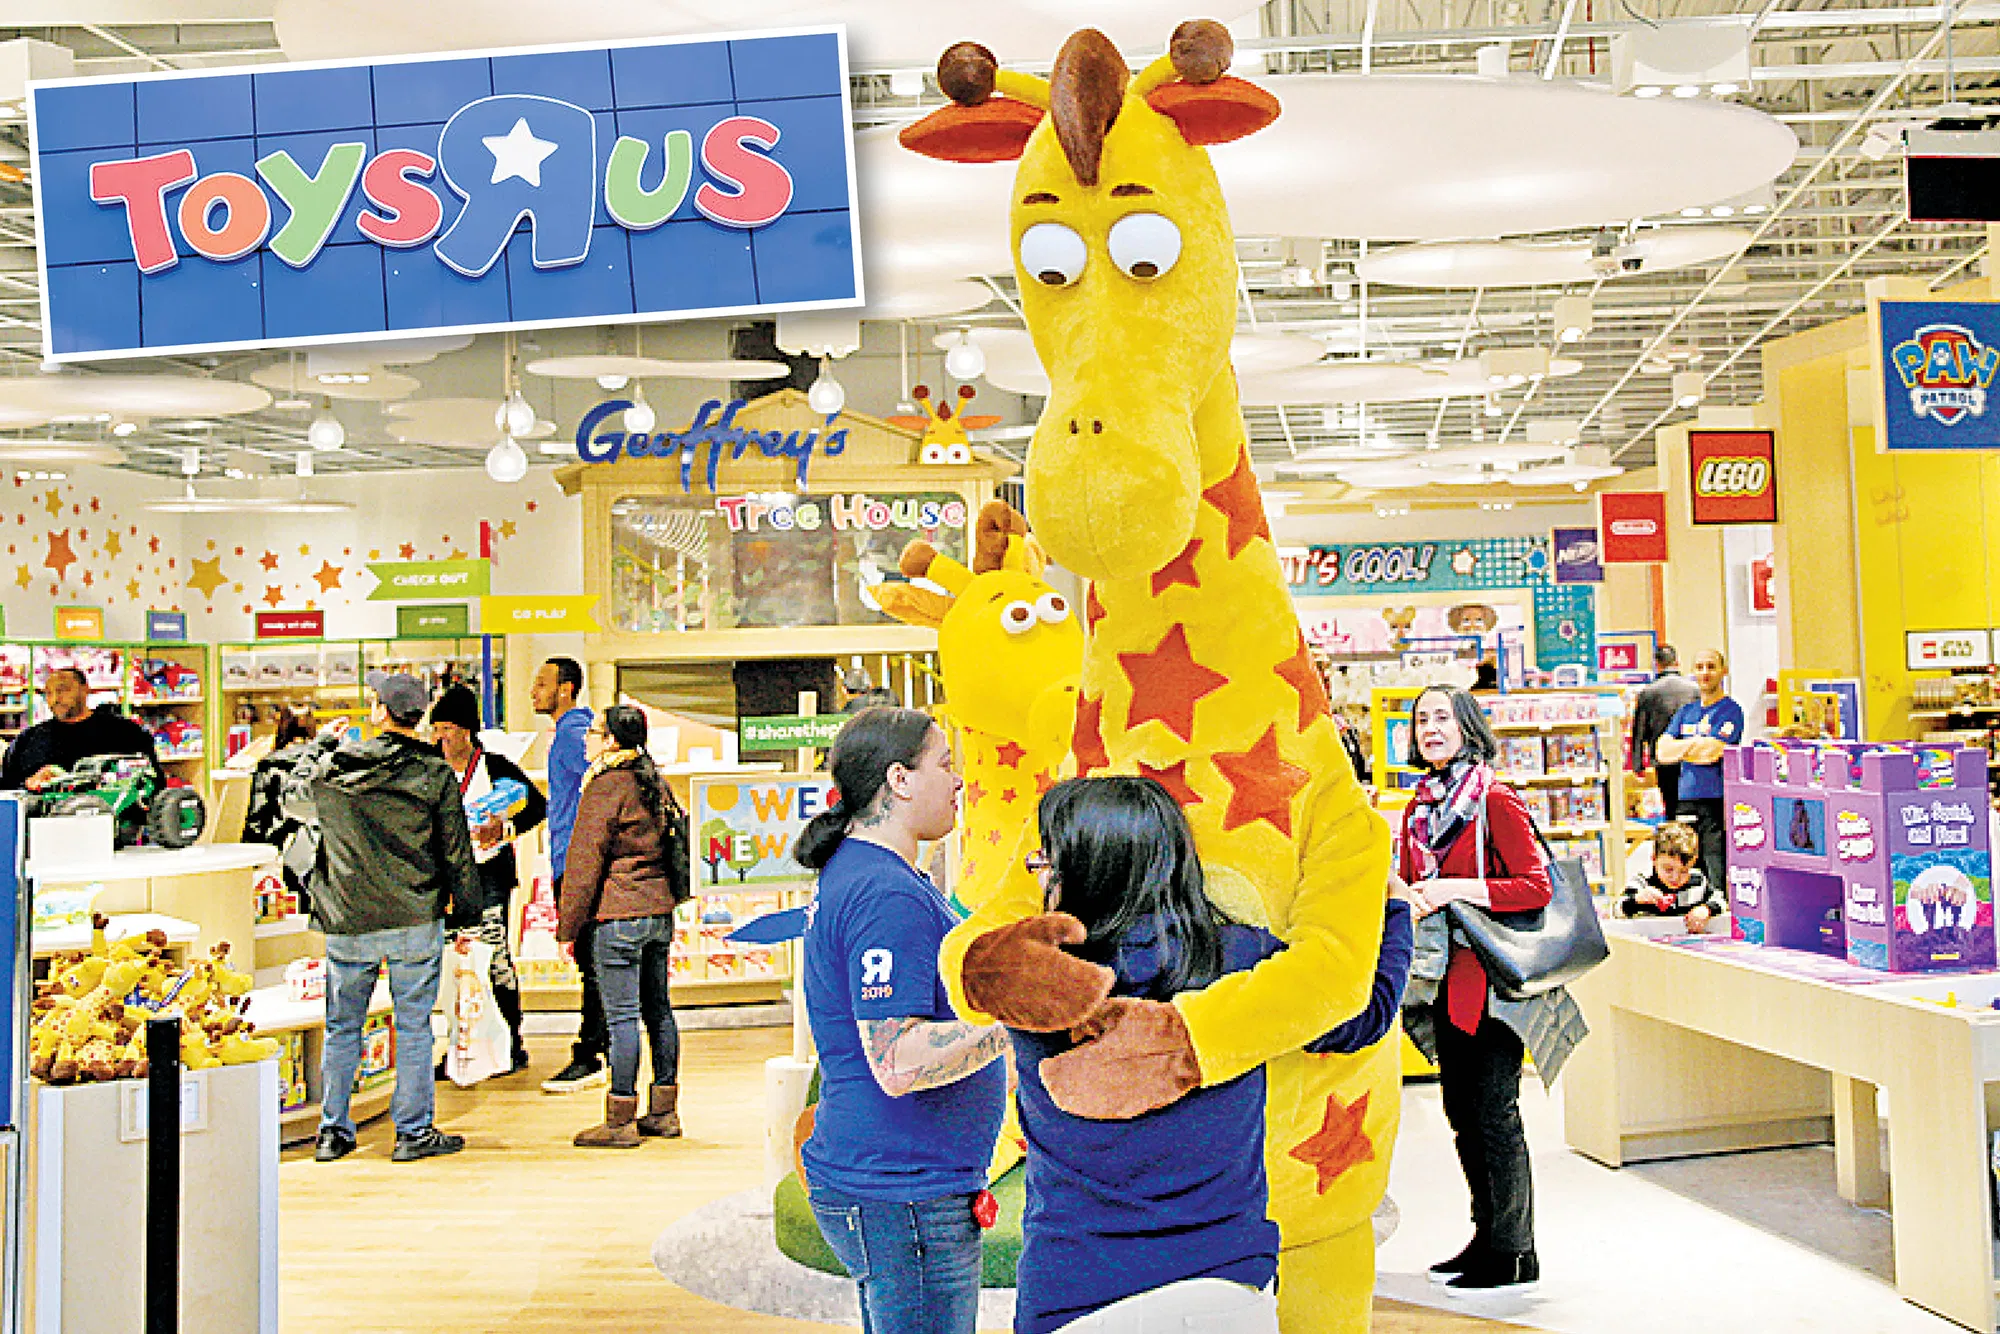 بعد إفلاسها.. شركة "Toys 'R' Us" للألعاب تعيد فتح متاجرها في بريطانيا 